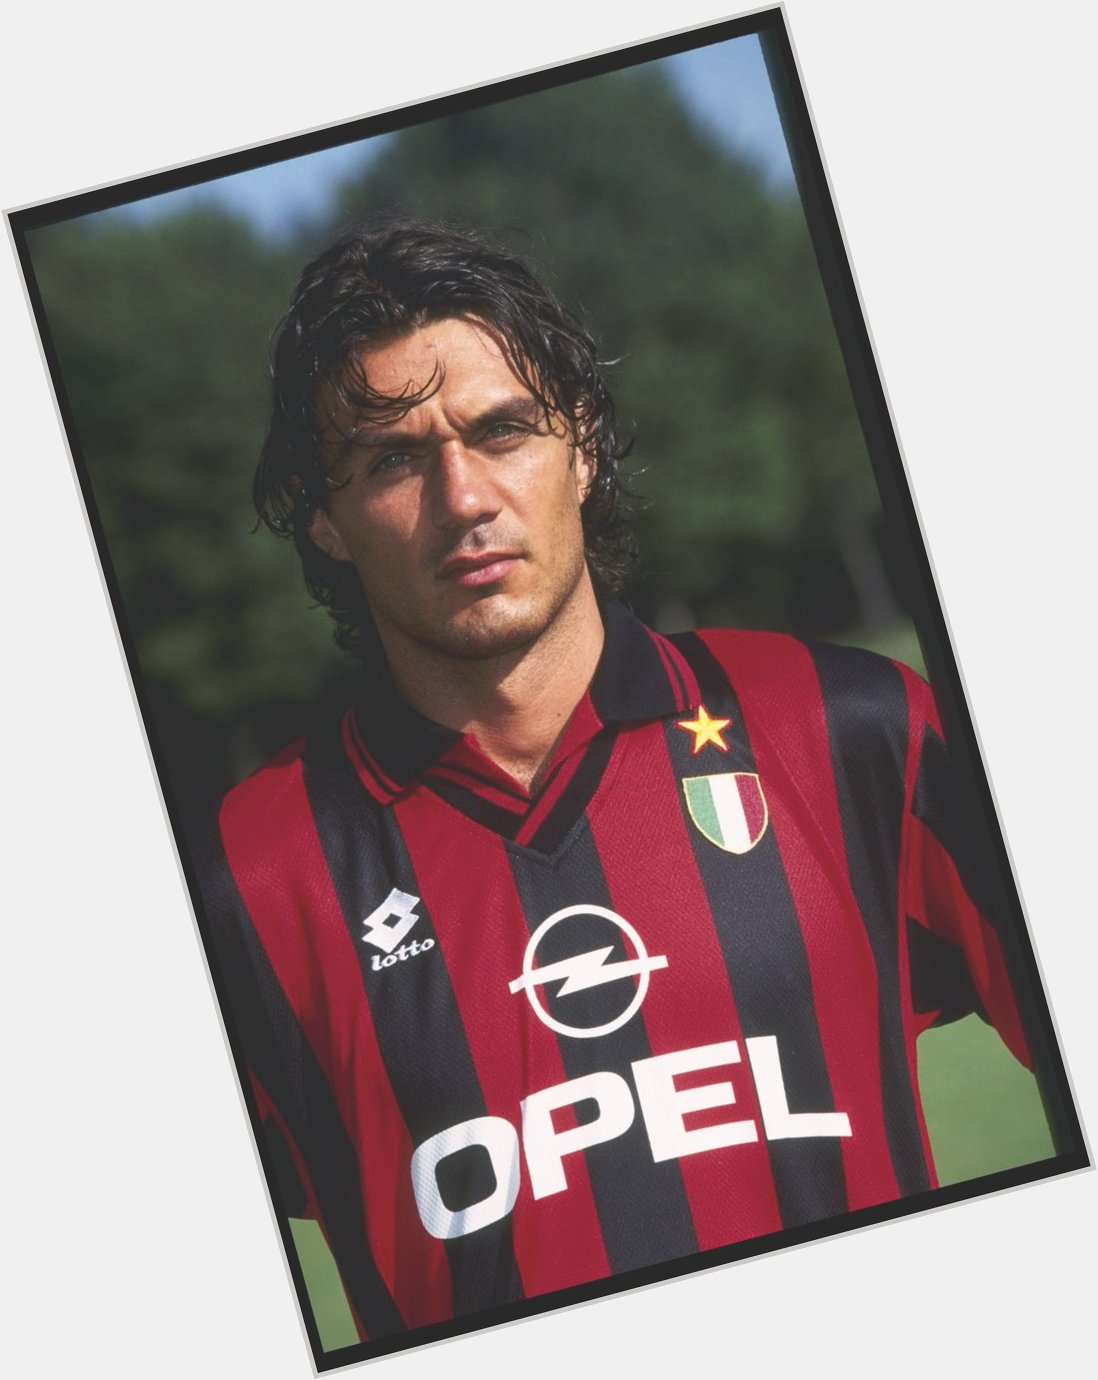 Happy birthday Paolo Maldini
 
Capitano

Leader 

Legend 

 Mr Milan 